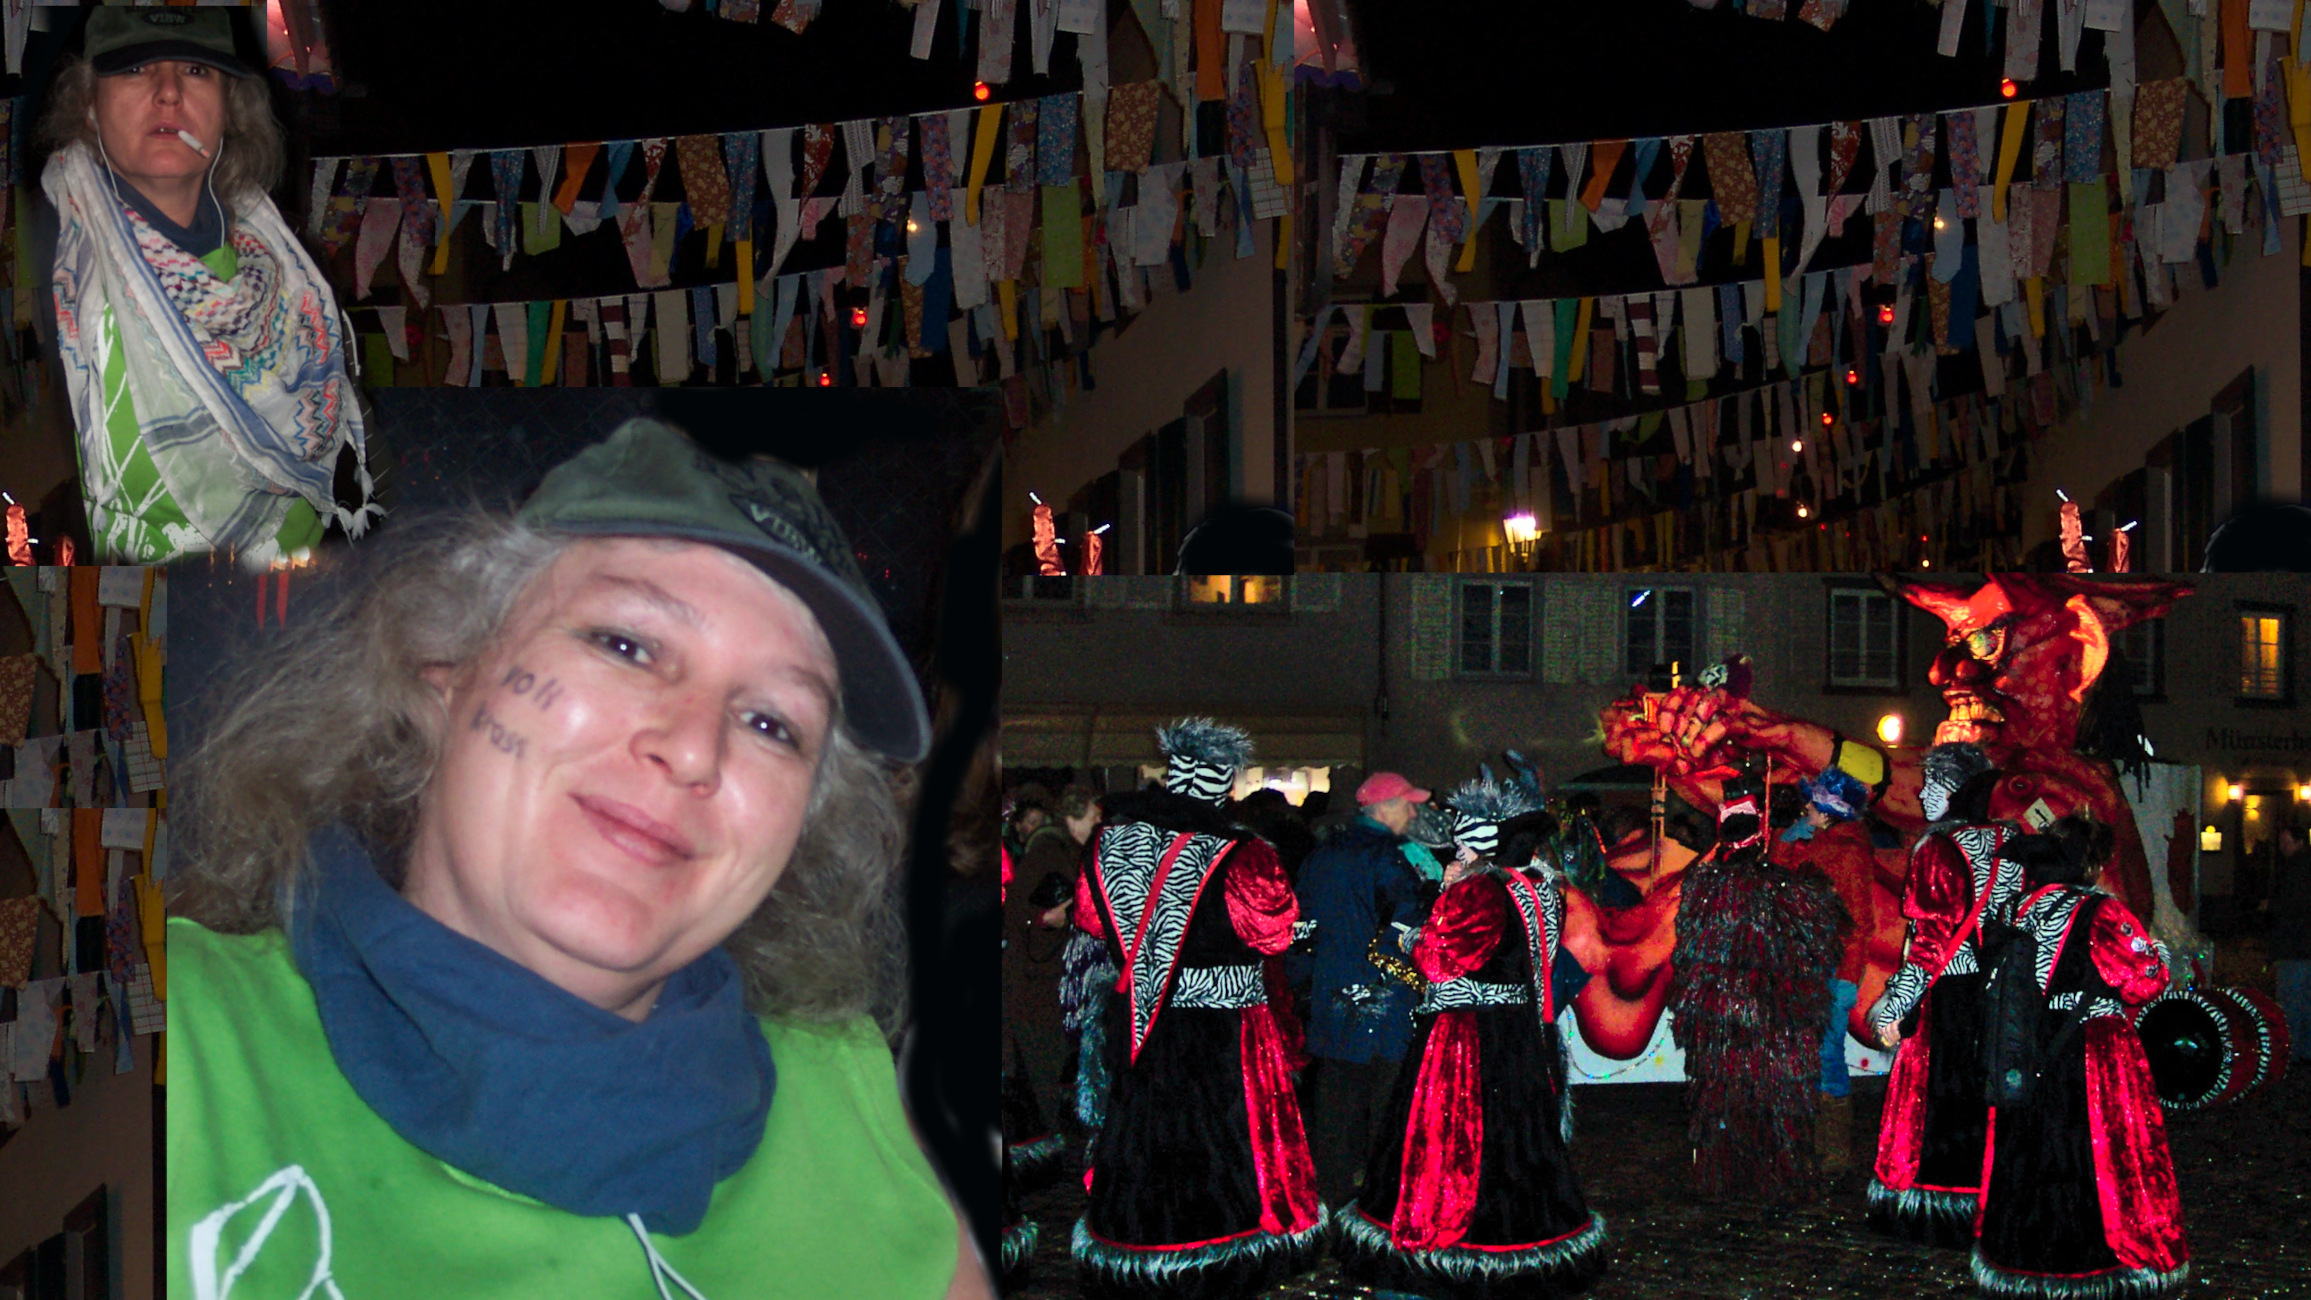 Collage zweimal eine Frau im Chabokostüm, einmal grimmig schauend, einmal strahlend, im Hintergrund nachts mit Fasnetsbändeln, beleuchtetem Teufelswagen, Menschen in Kostümen